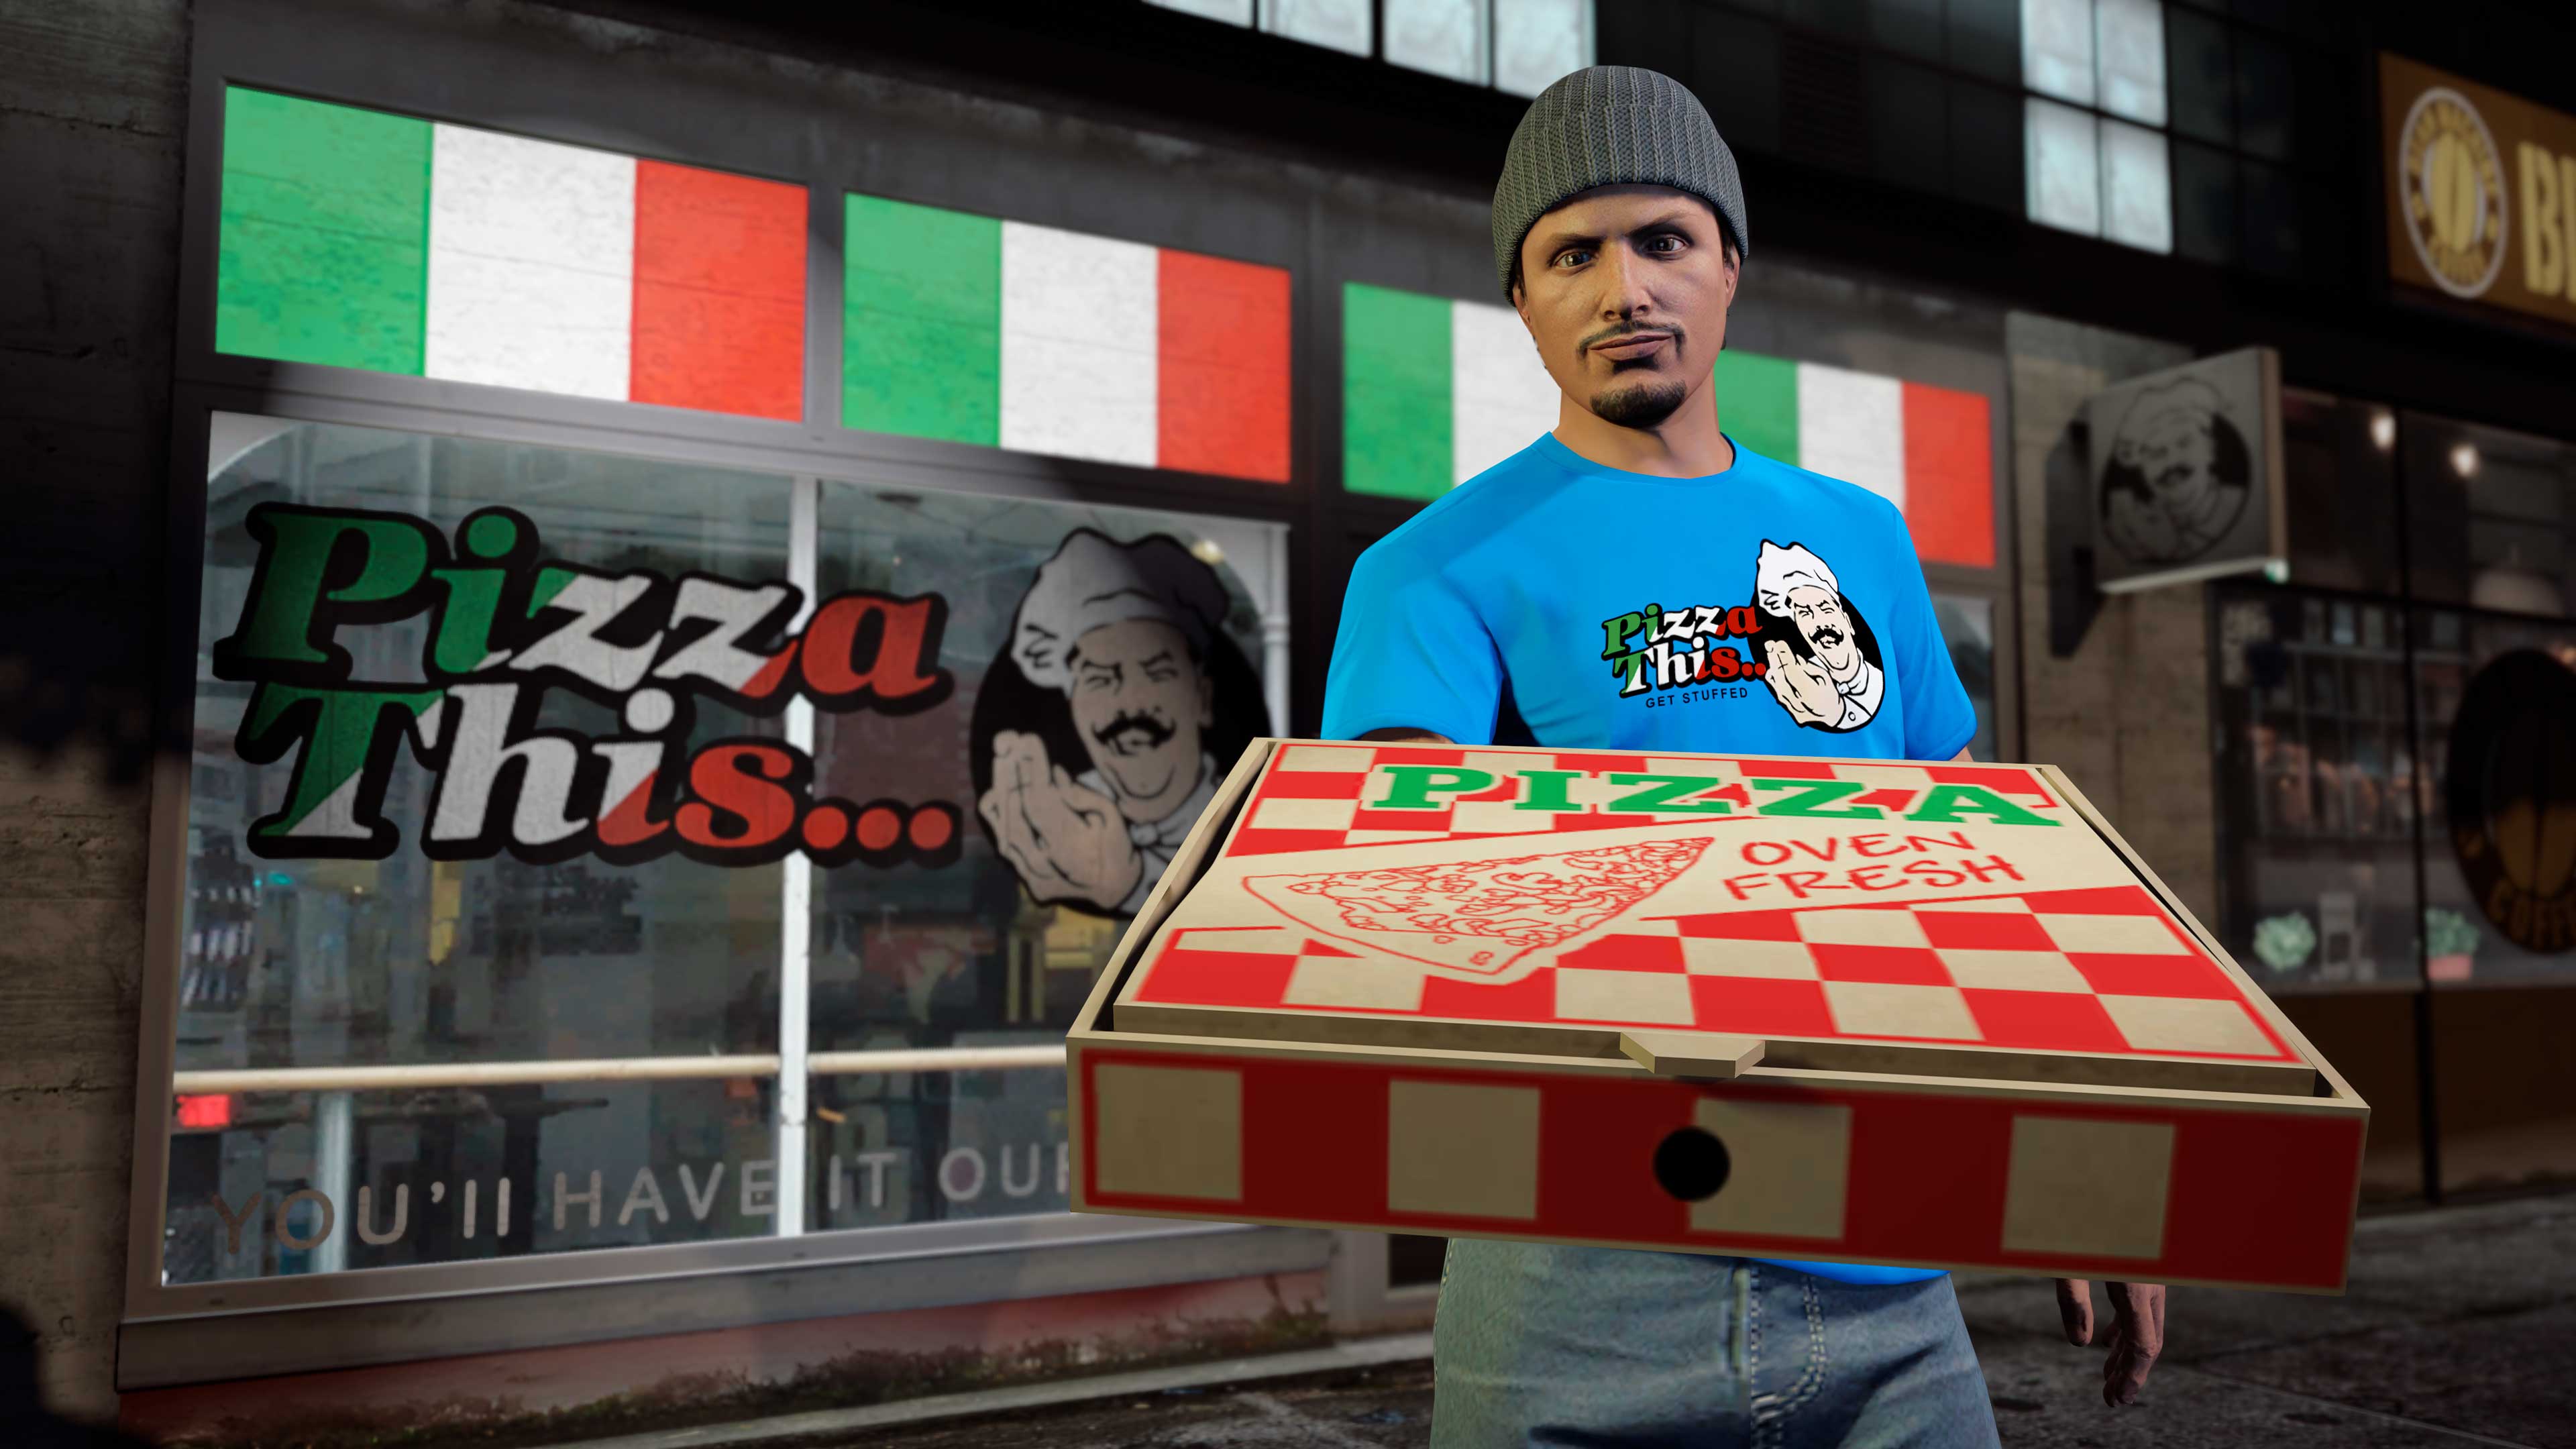 Personagem do GTA Online usando uma camisa azul do Pizza This… enquanto segura uma caixa de pizza no lado de fora do restaurante.